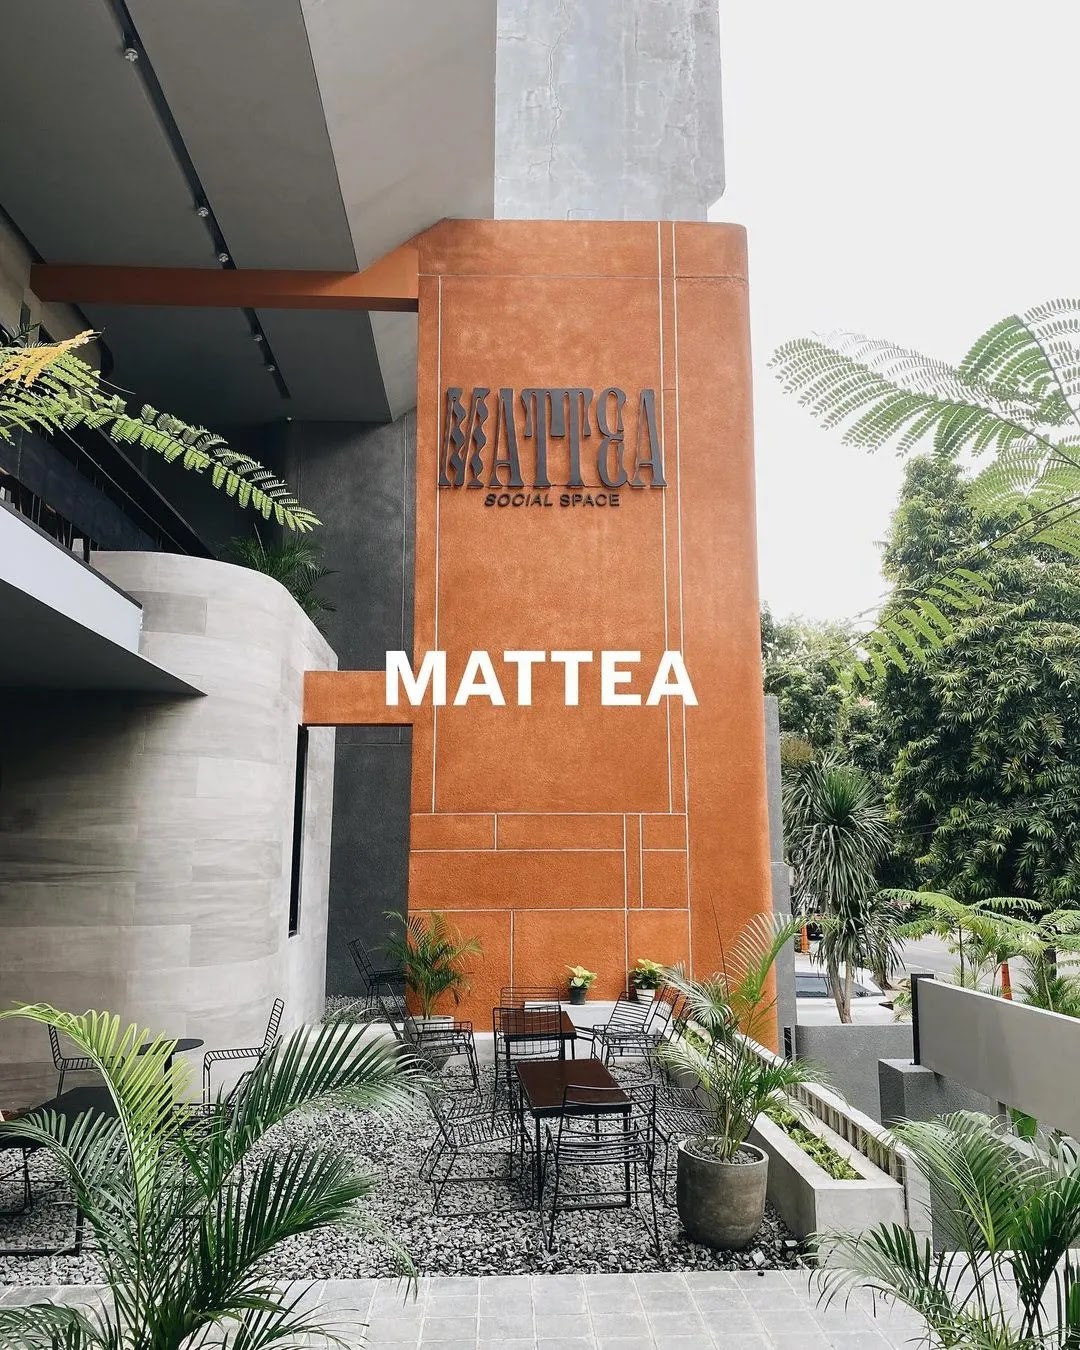 Mattea Social Space Blok M Jam Buka, Menu & Lokasi Terbaru